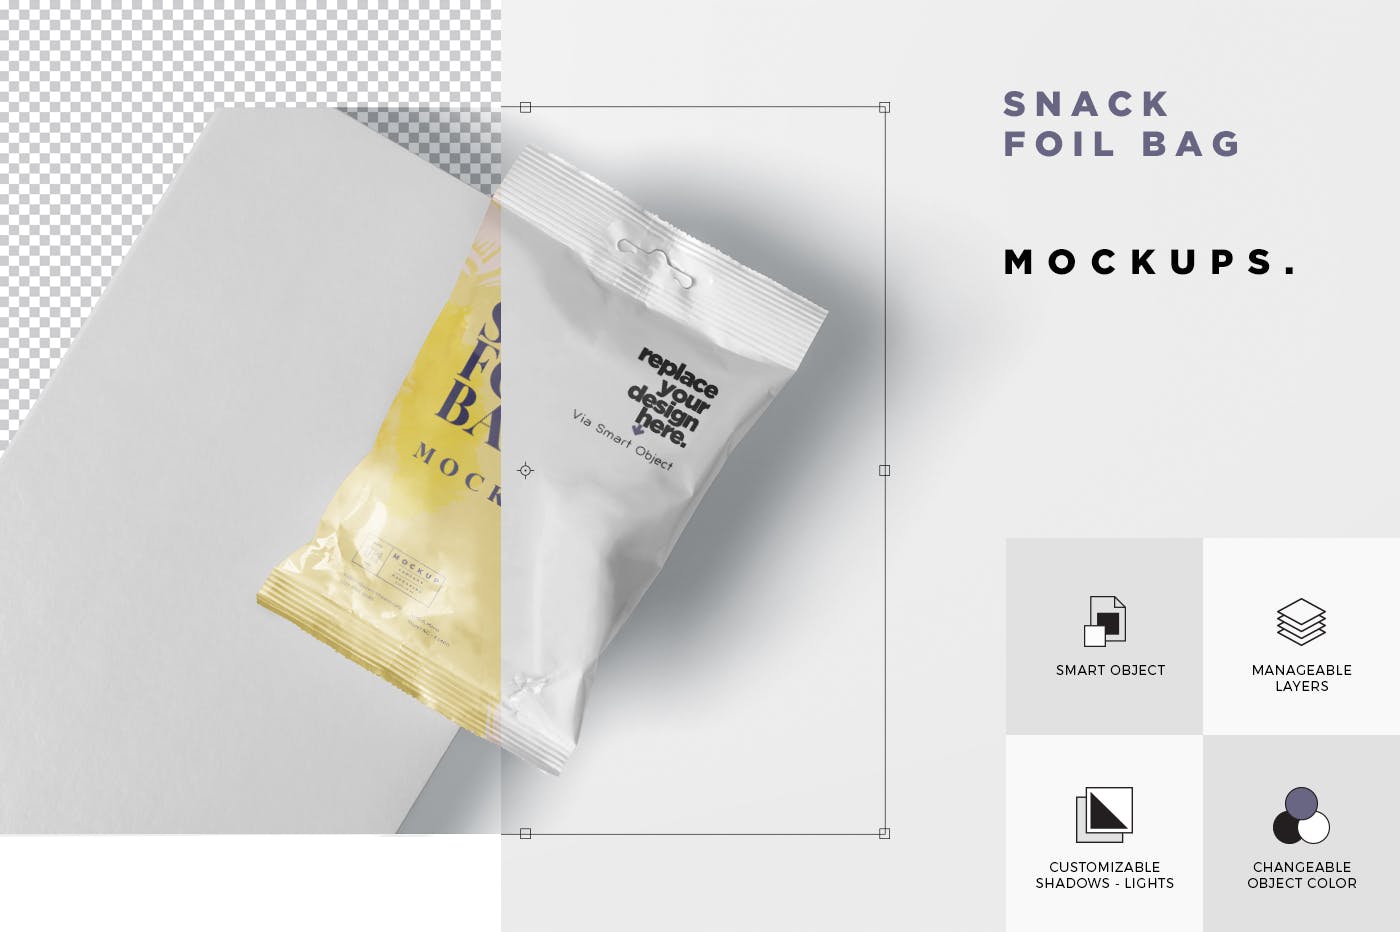 小吃零食铝箔包装袋设计样机模板 Snack Foil Bag Mockup – Slim Size插图(5)